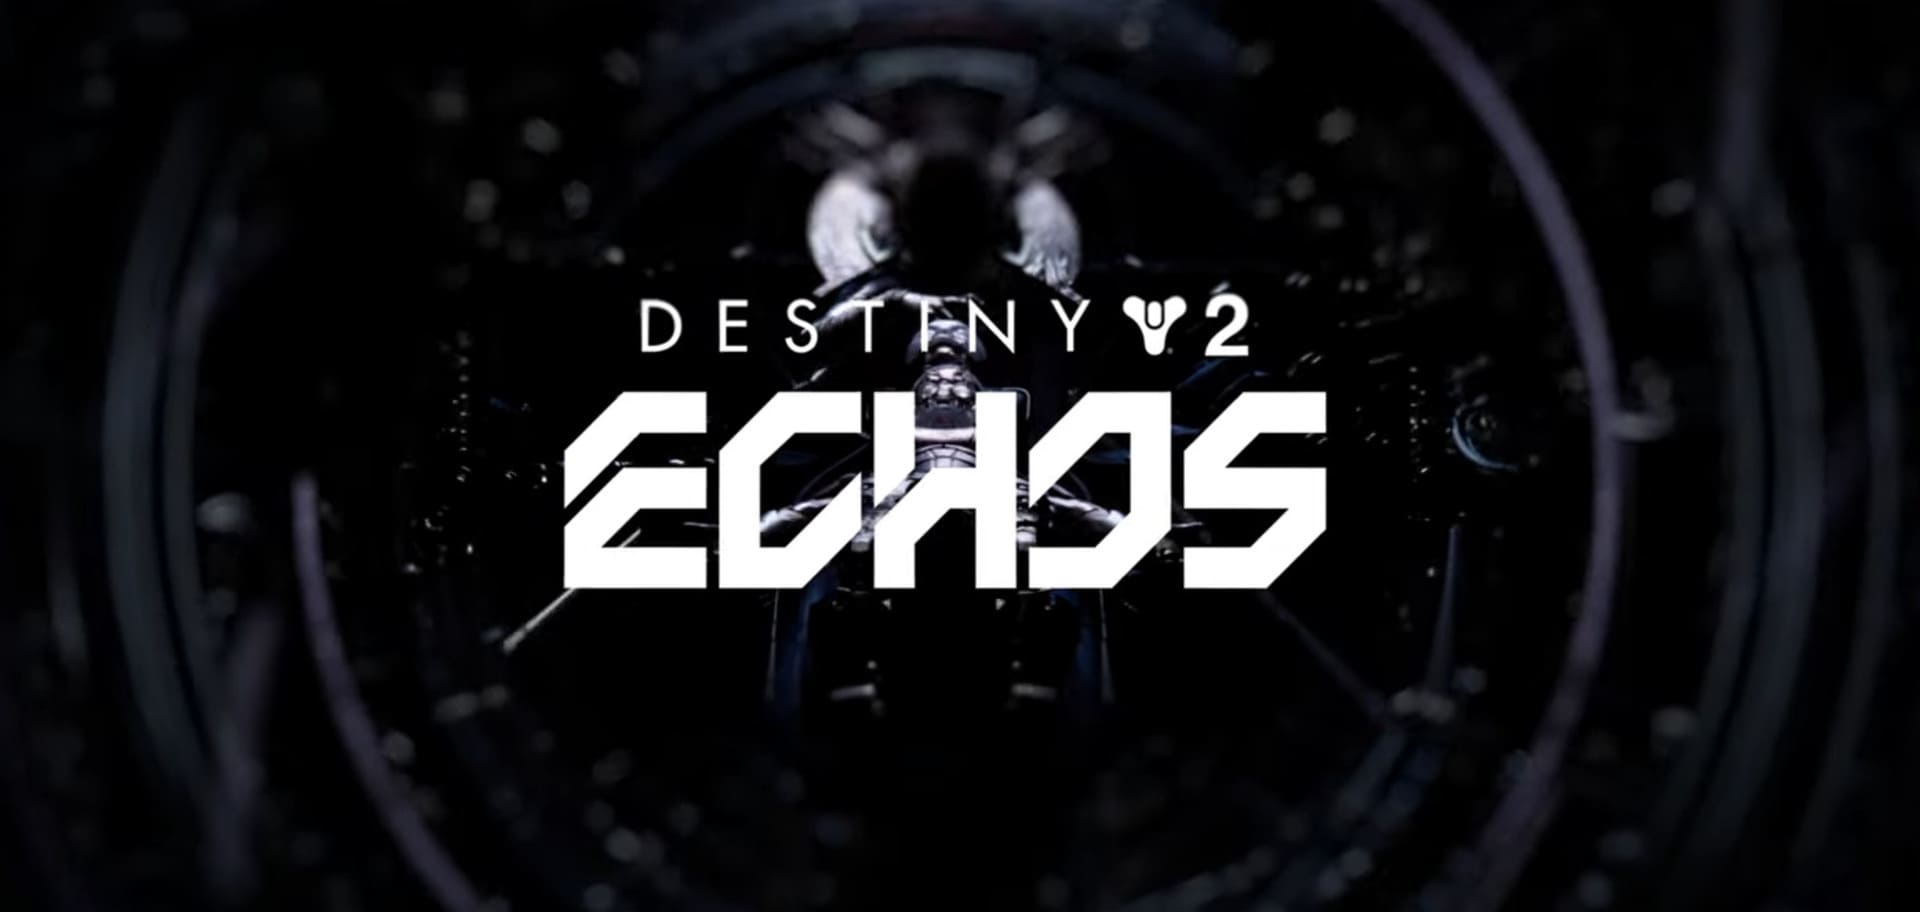 Destiny 2 enthüllt neue Episode Echos